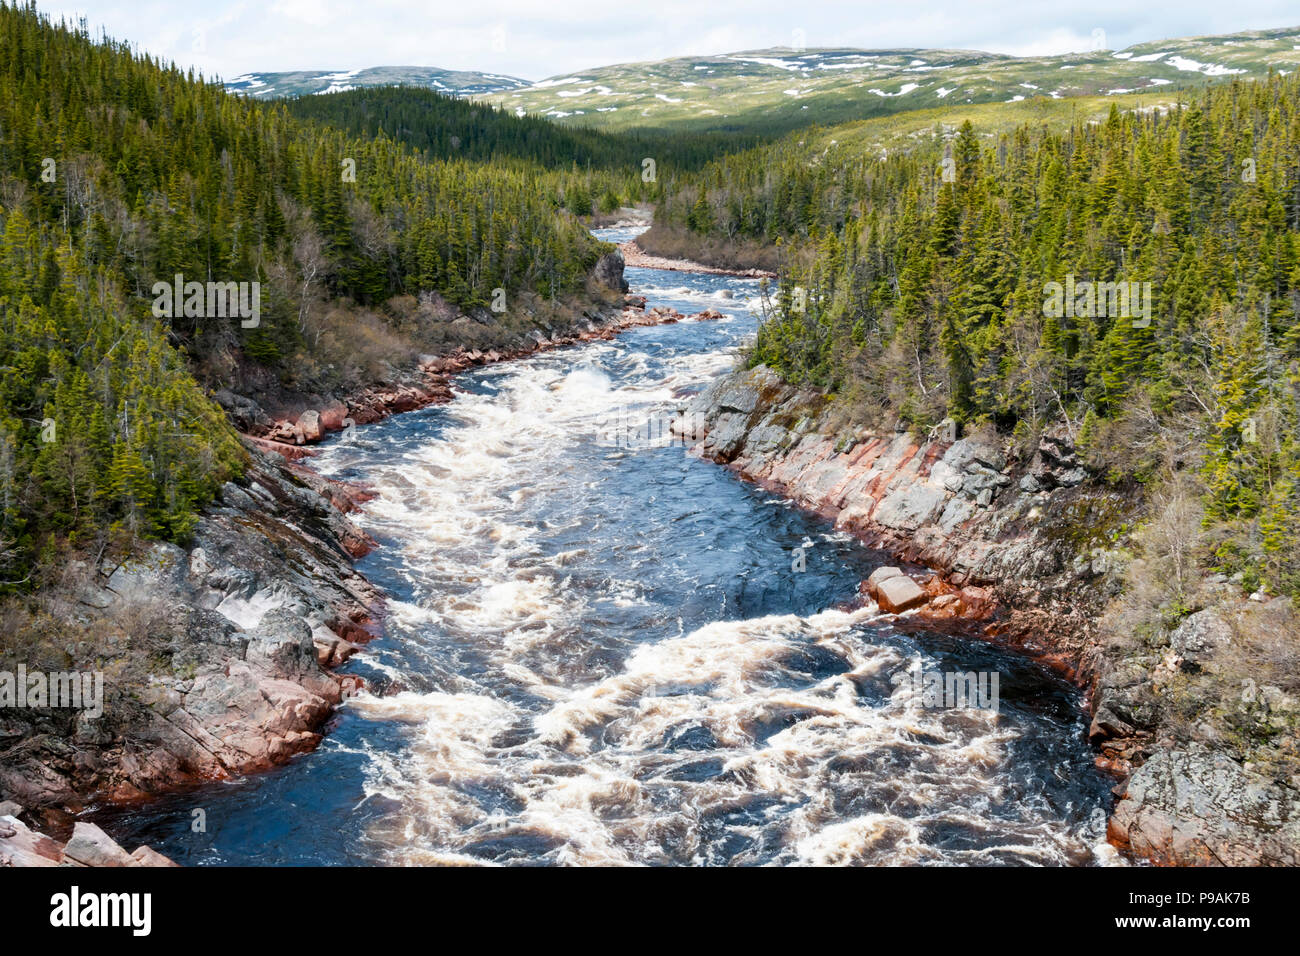 The Pinware River flows through the Pinware River Provincial Park in southern Labrador, Canada. Stock Photo